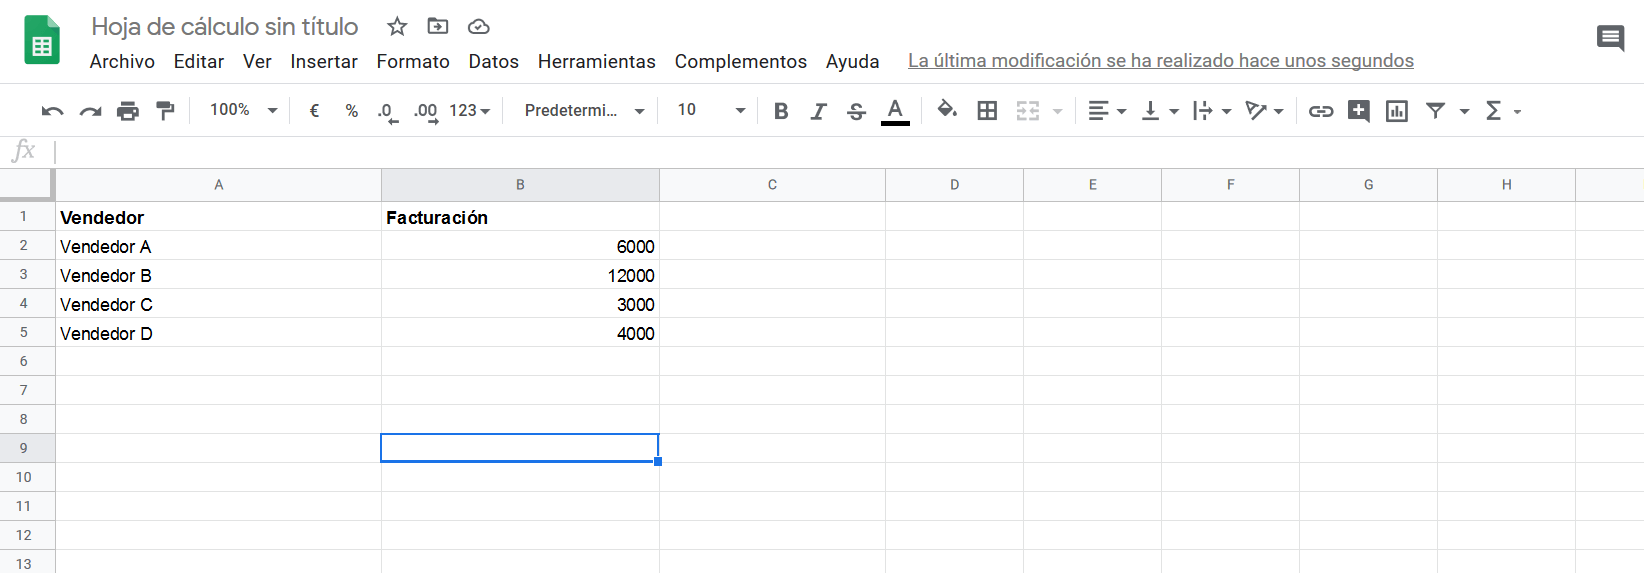 Datos de ejemplo en una hoja de Google Sheets 